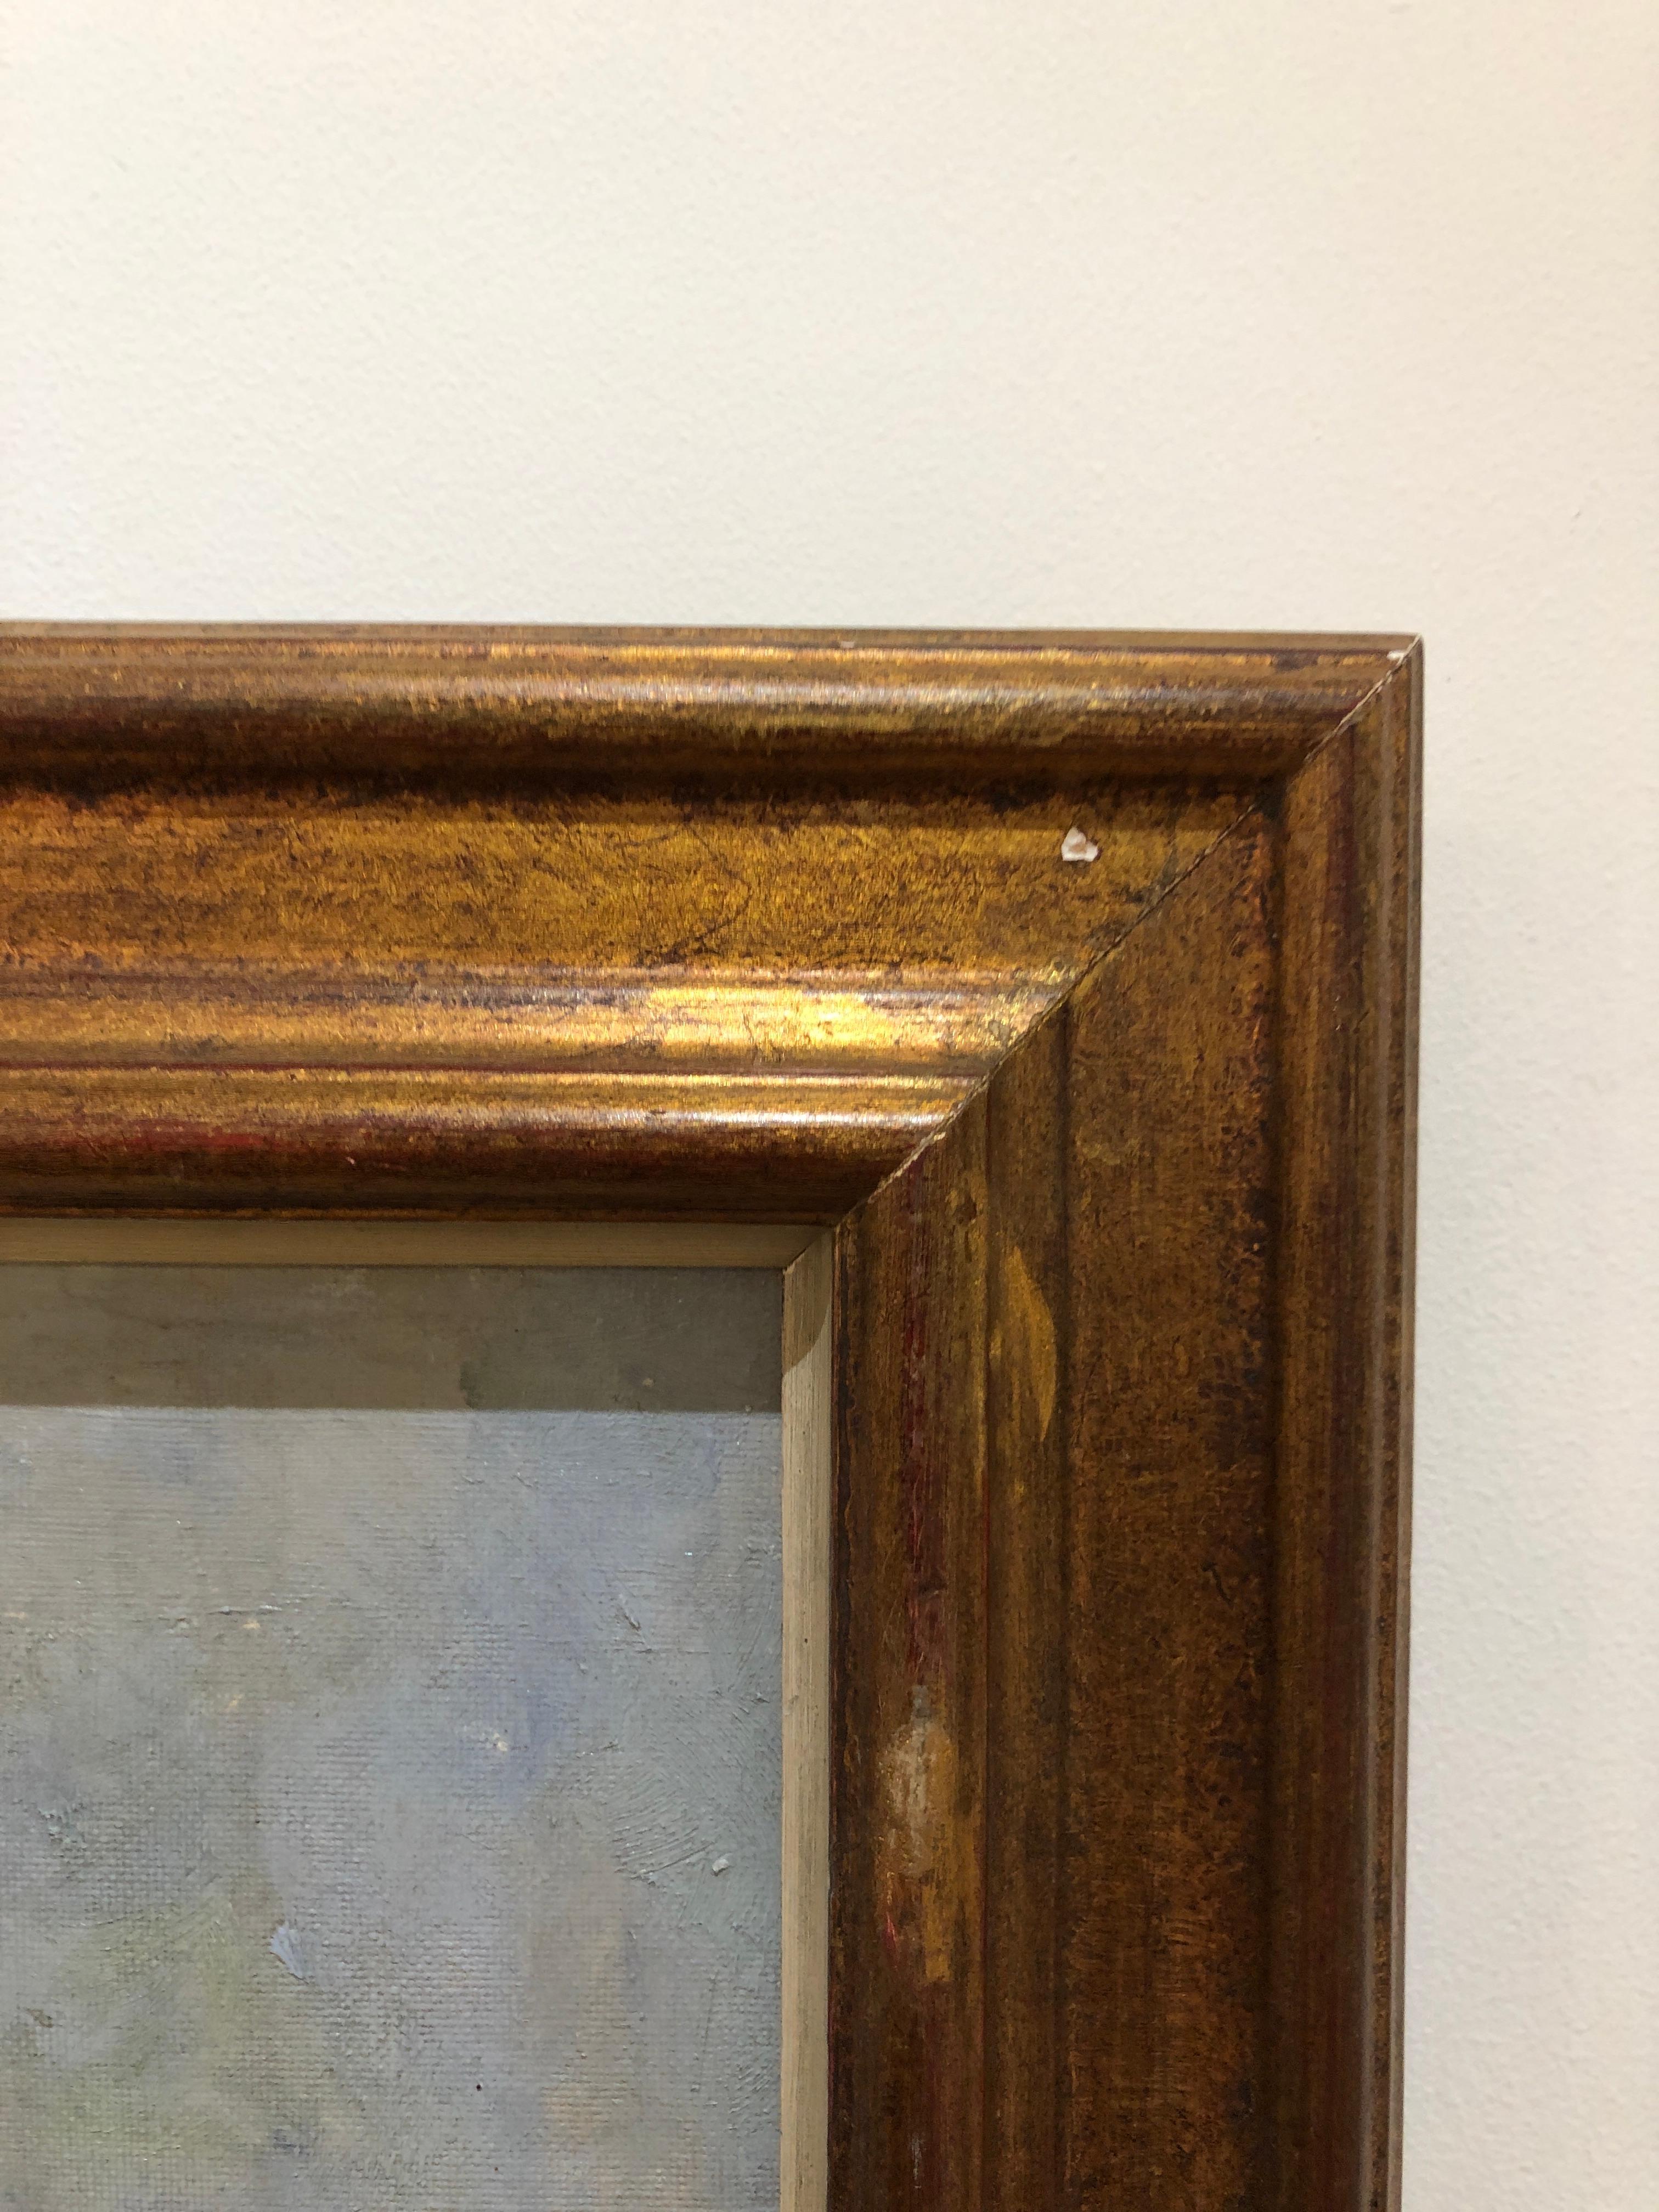 Work on canvas
Golden wooden frame
56 x 64.5 x 2.5 cm